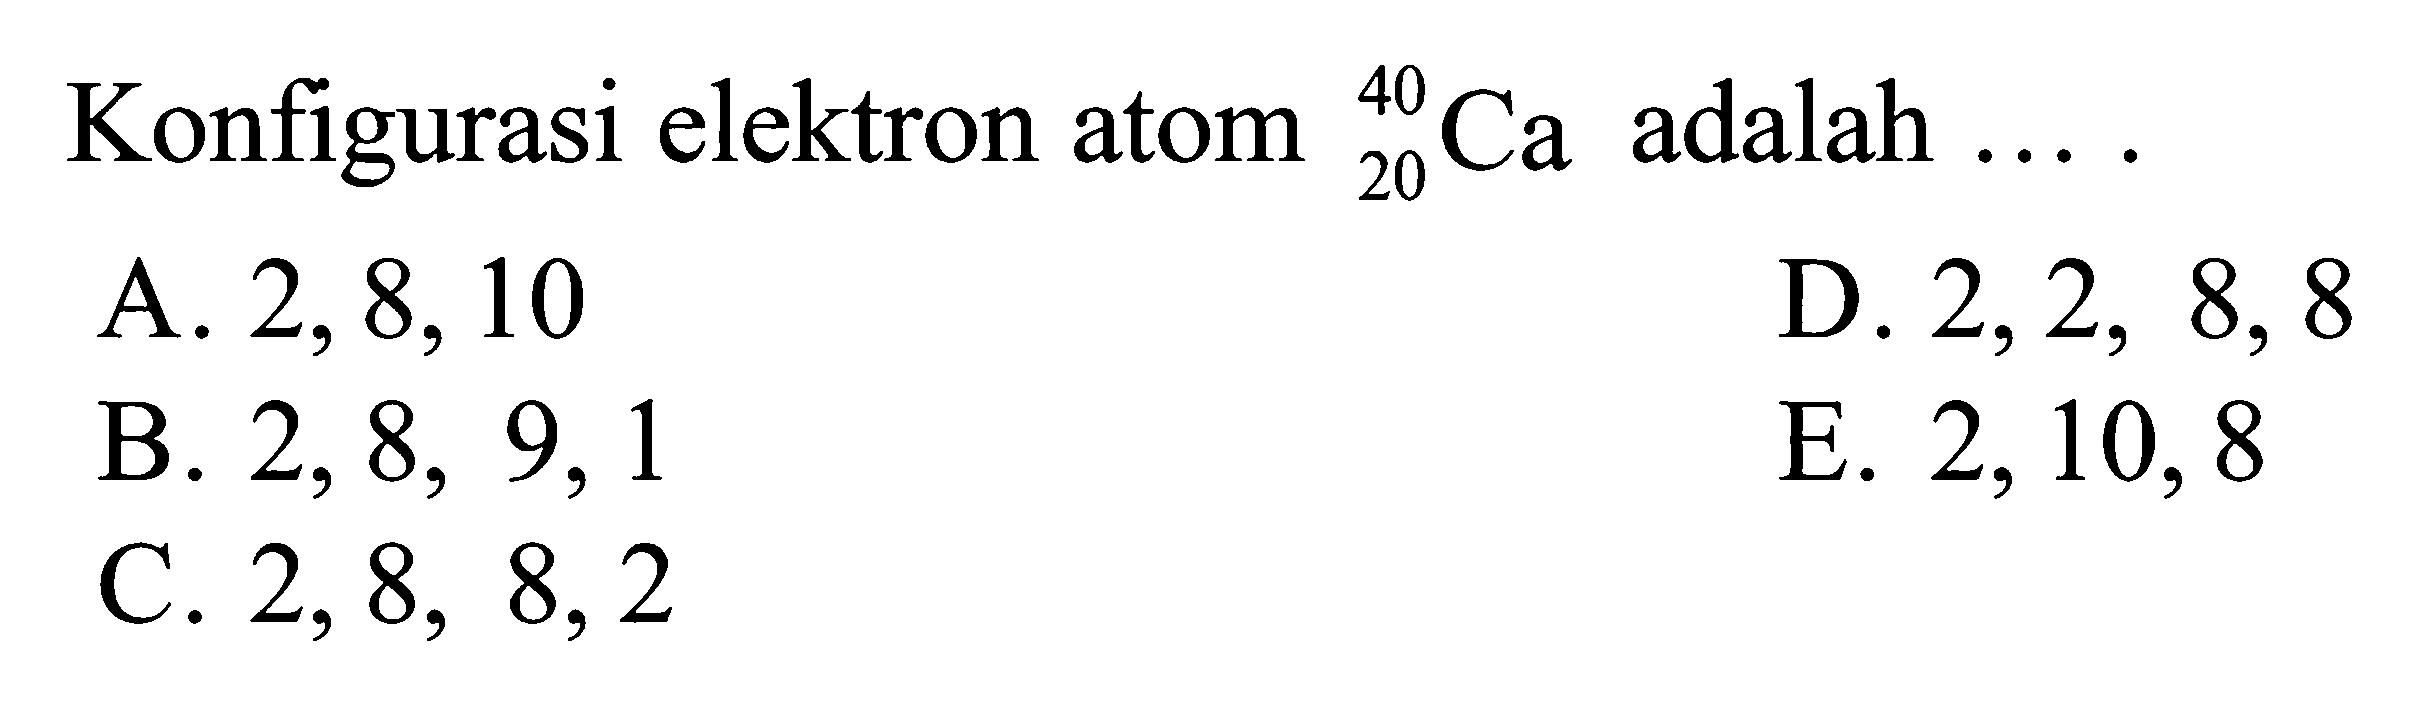 Konfigurasi elektron atom 40 20 Ca adalah ...